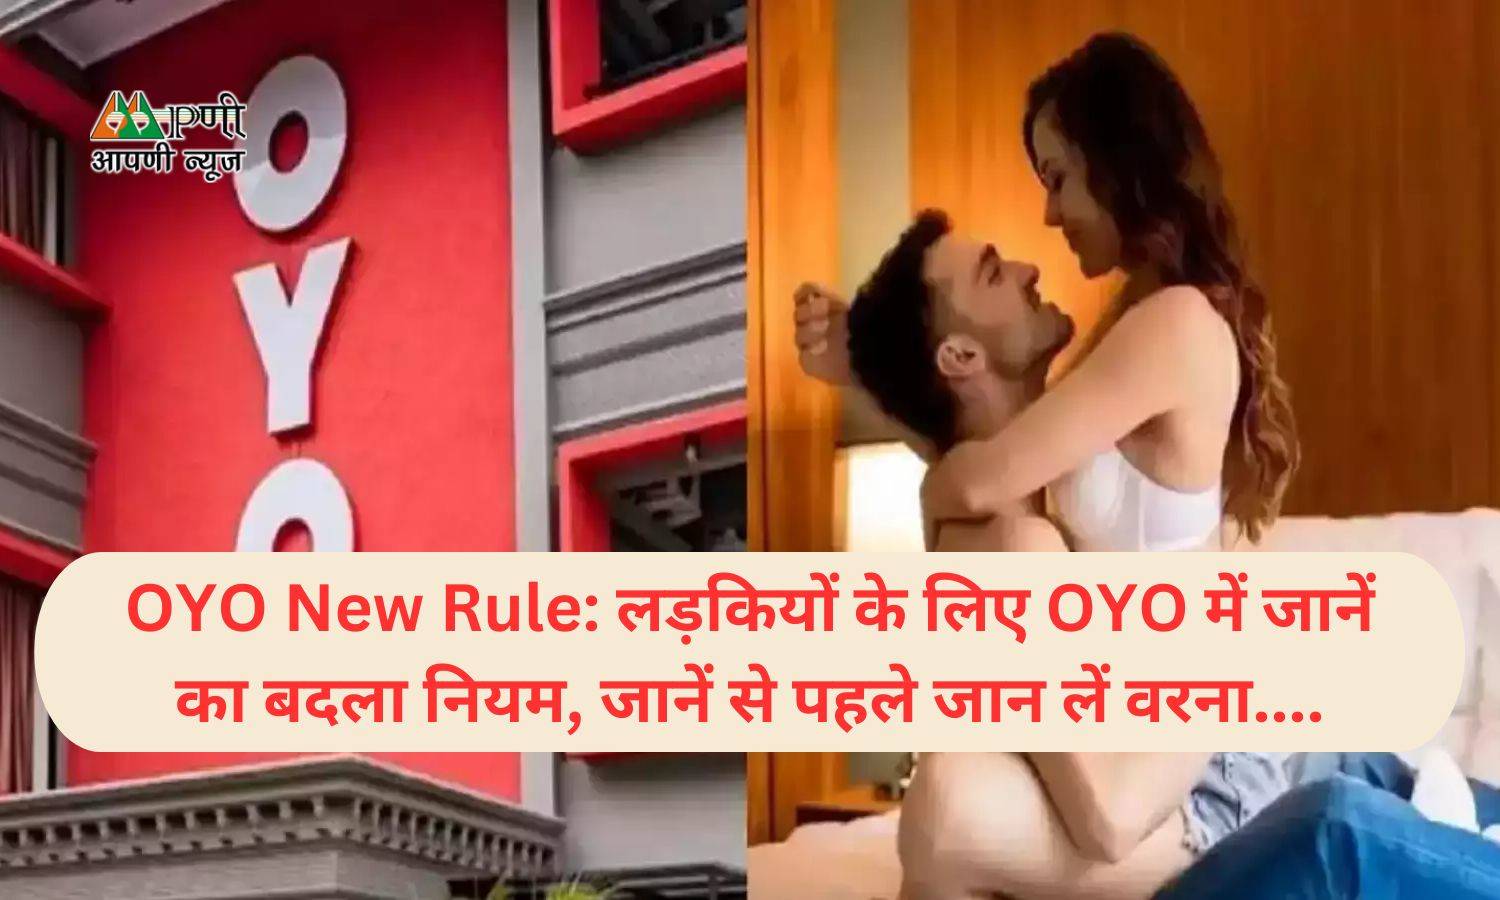 OYO New Rule: लड़कियों के लिए OYO में जानें का बदला नियम, जानें से पहले जान लें वरना....